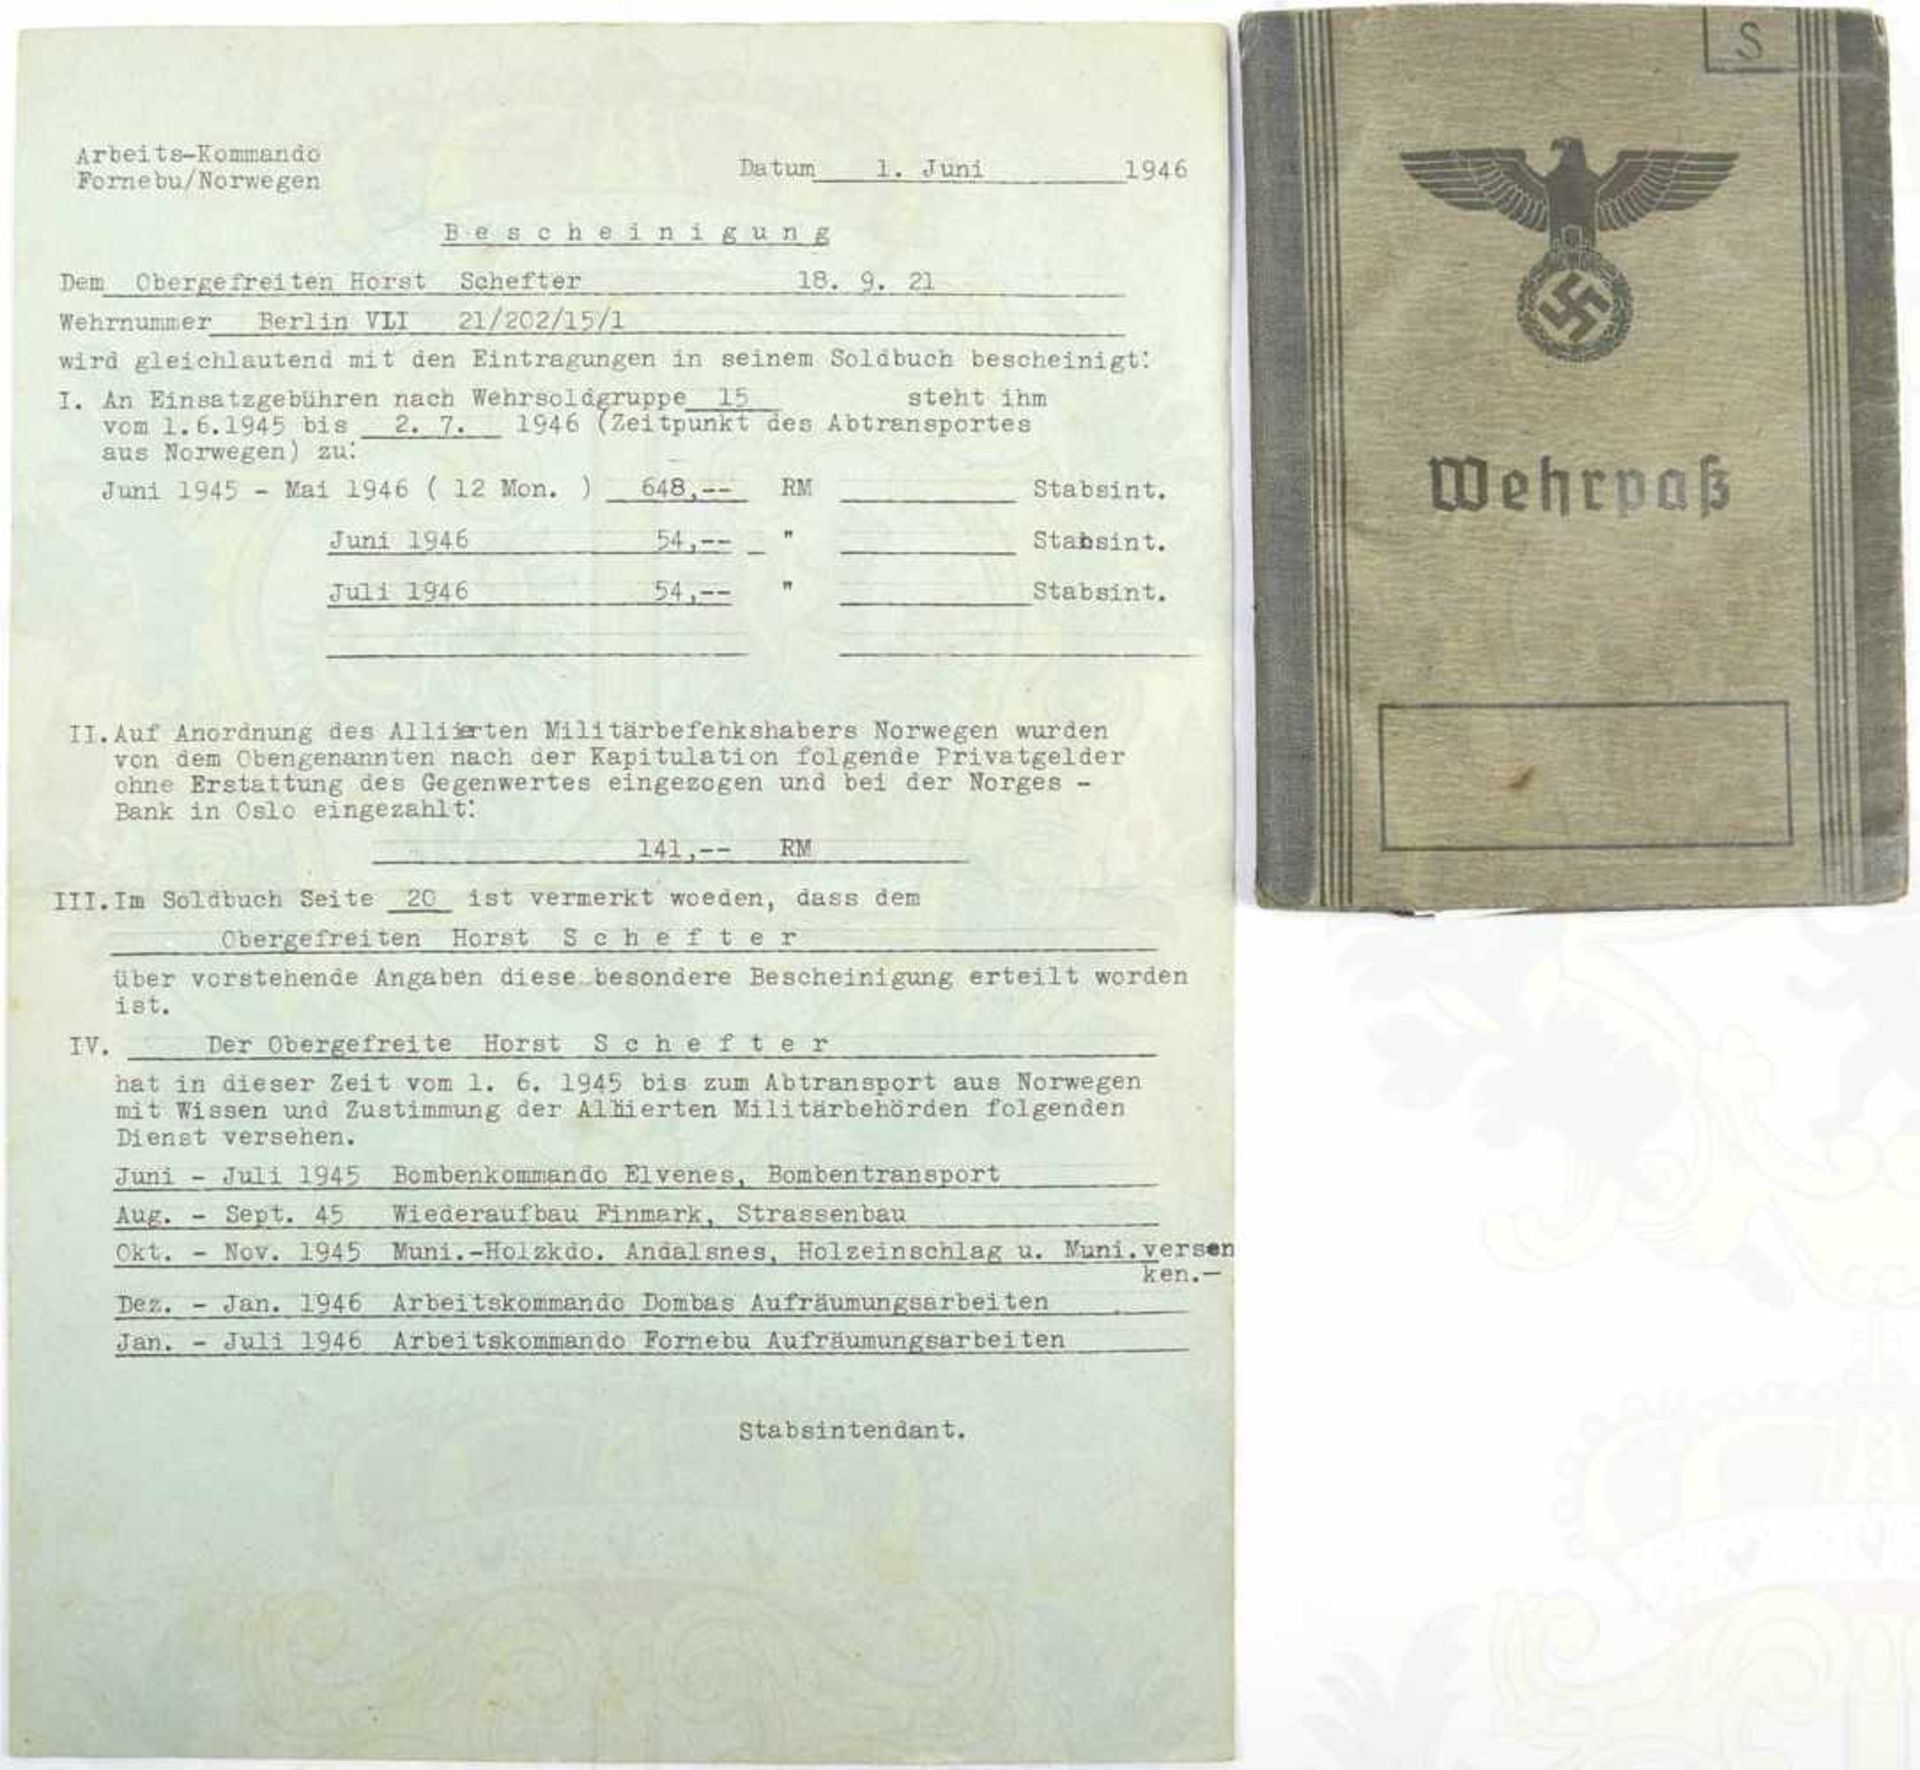 WEHRPASS OBERGEFREITER FLUGABWEHR, Einträge 1940 - Juli 1946, Flak-Ers.-Abt. 12 u. Flak-